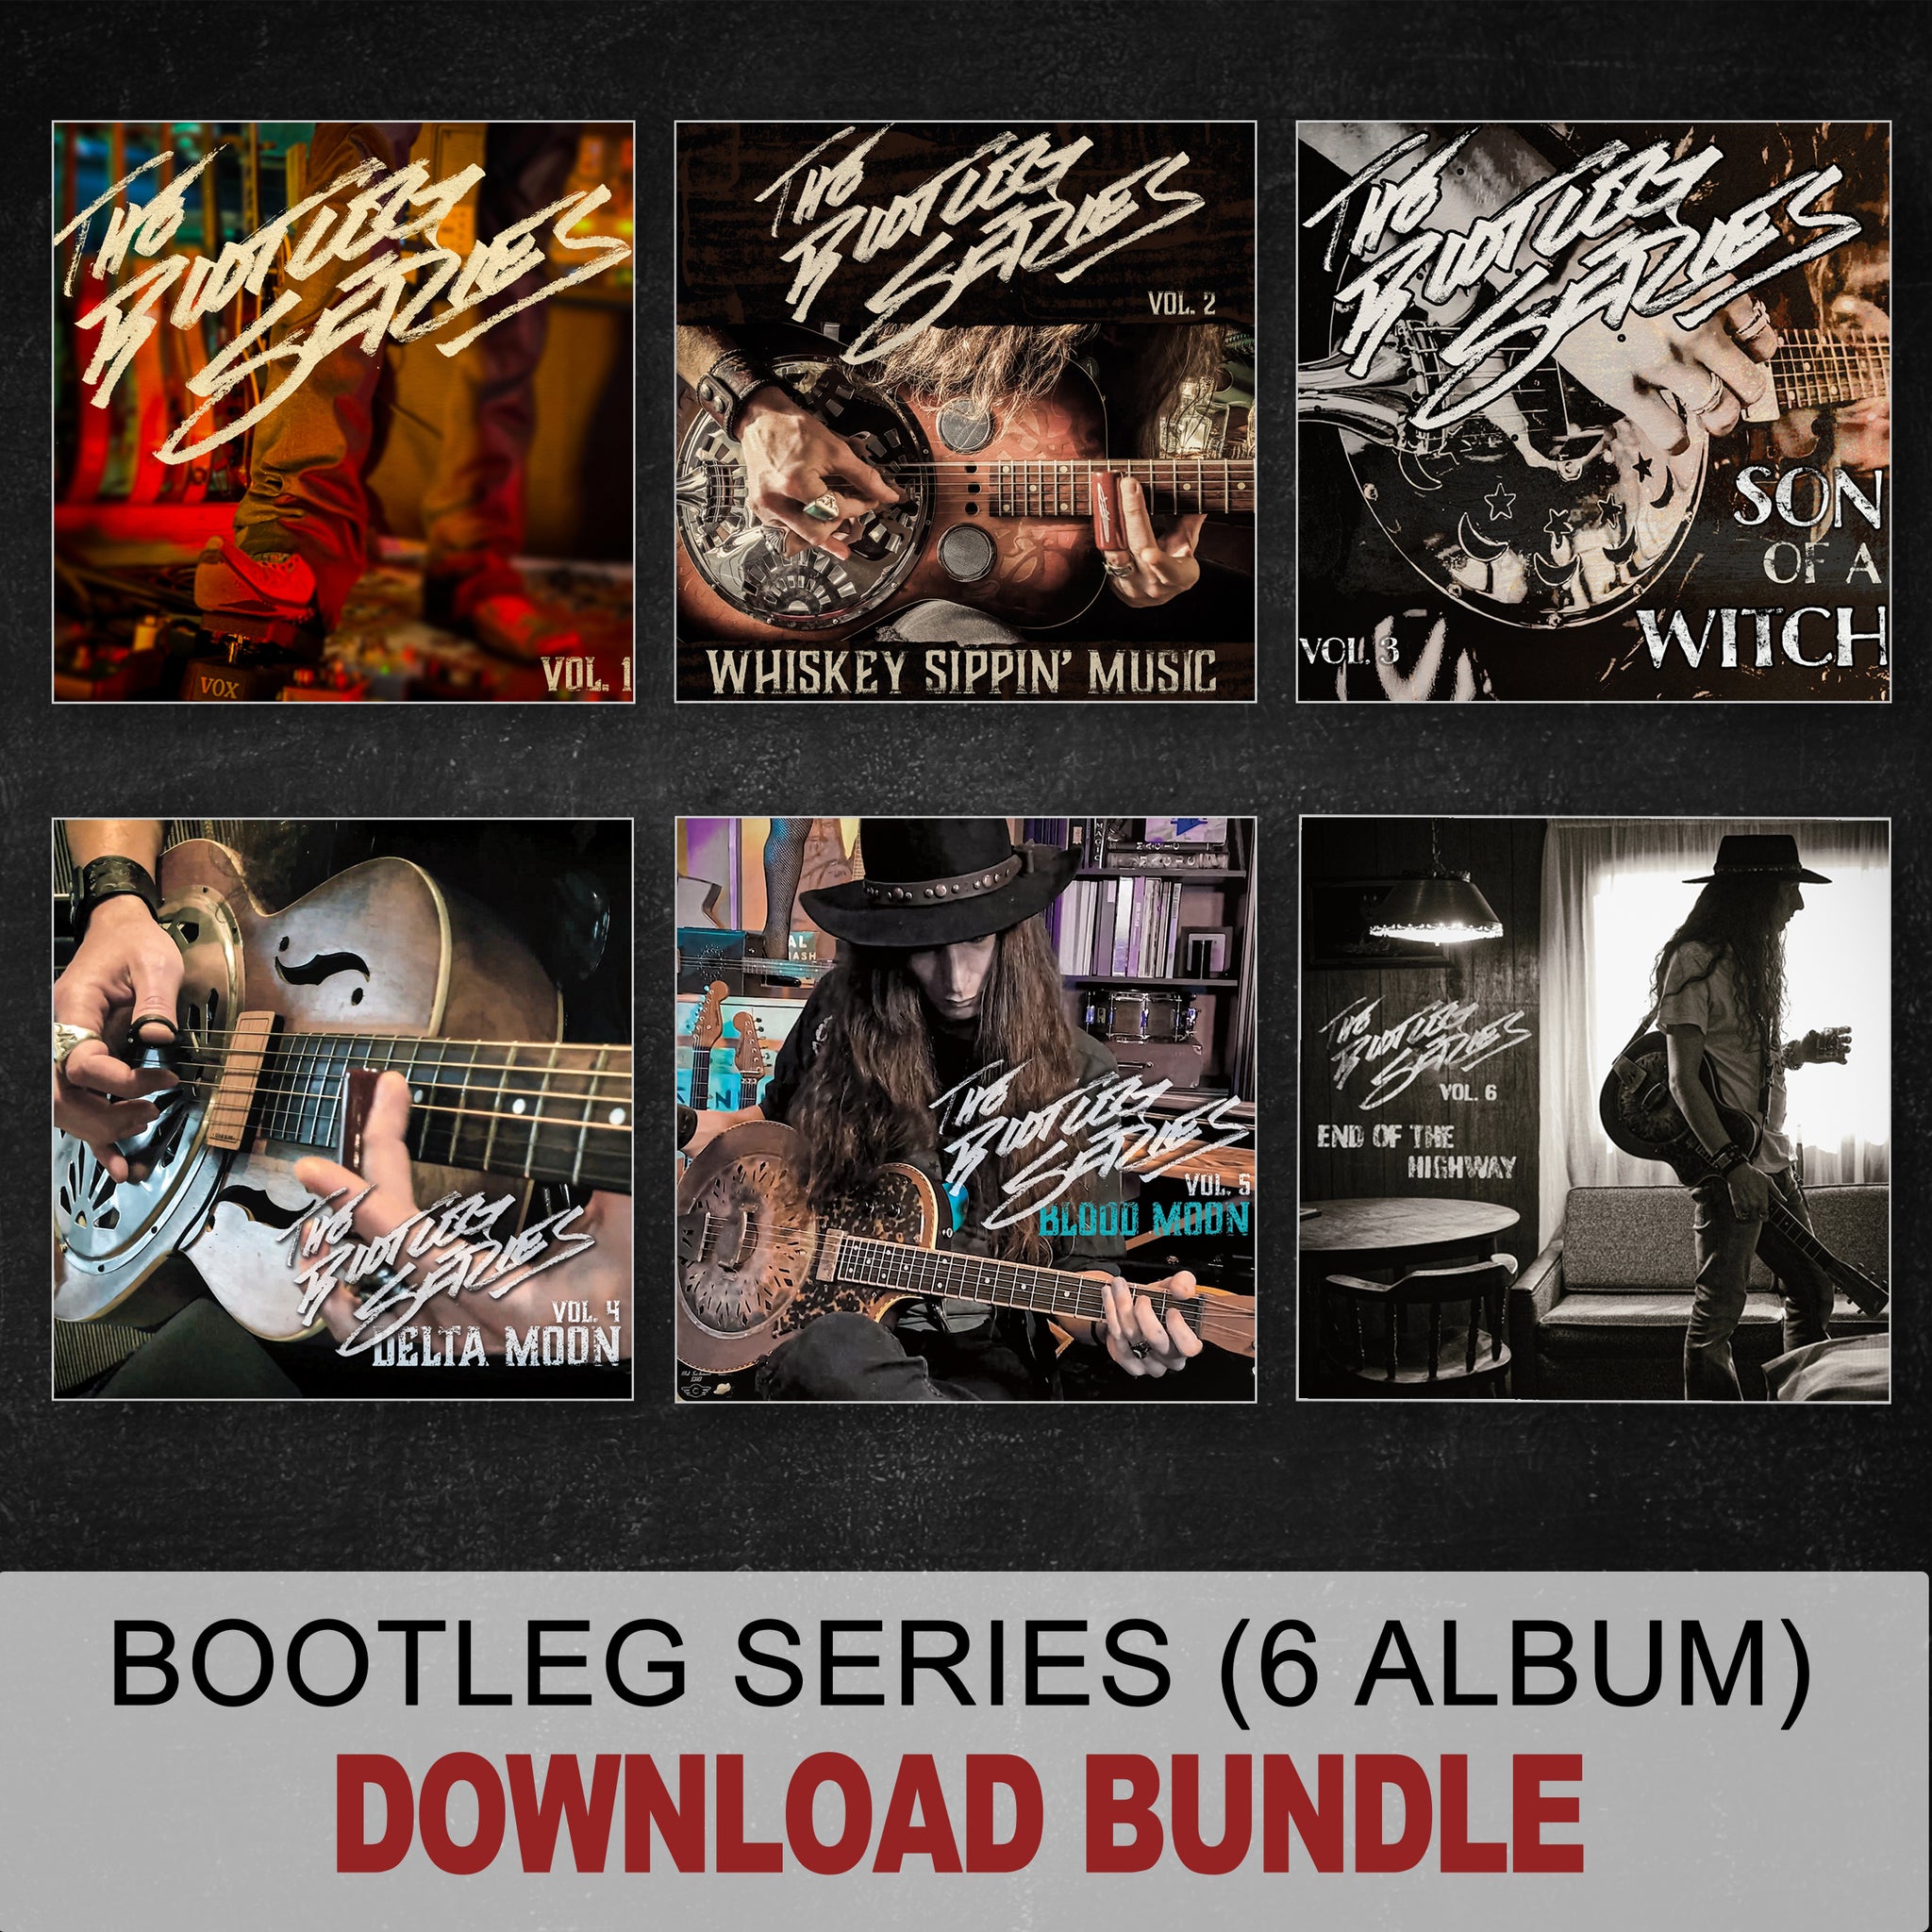 BOOTLEG SERIES DOWNLOAD BUNDLE - All 6 "Bootleg Series" Albums (DIGITAL)